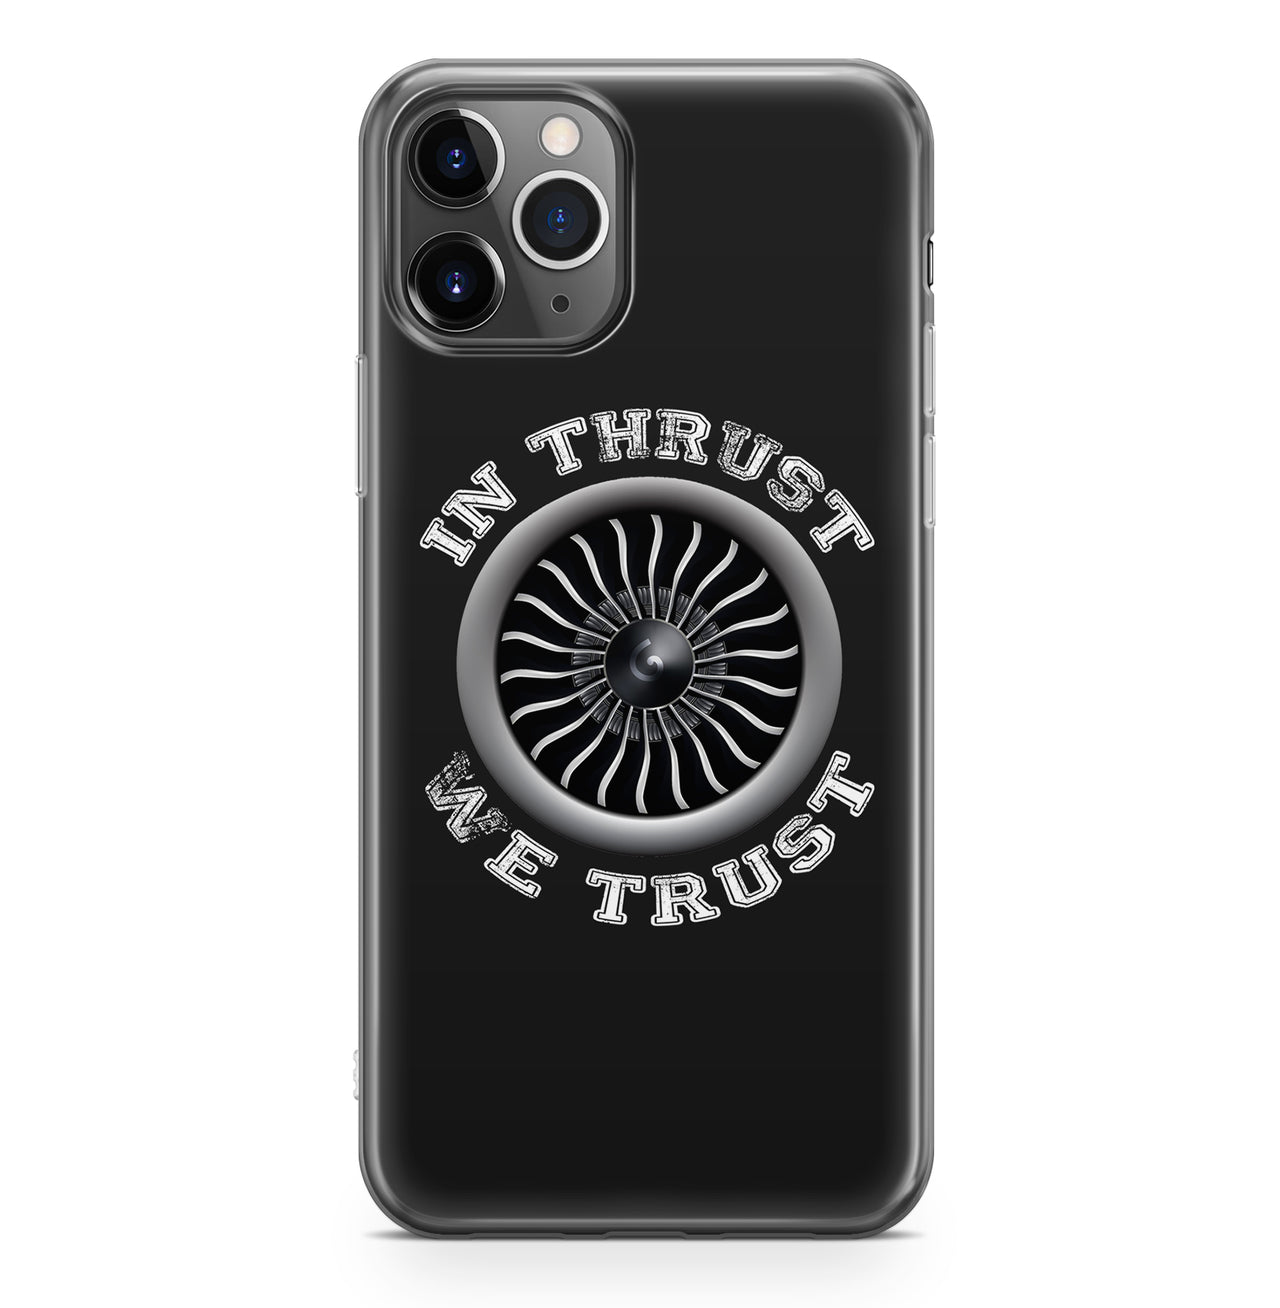 In Thrust We Trust (Vol 2) Designed iPhone Cases